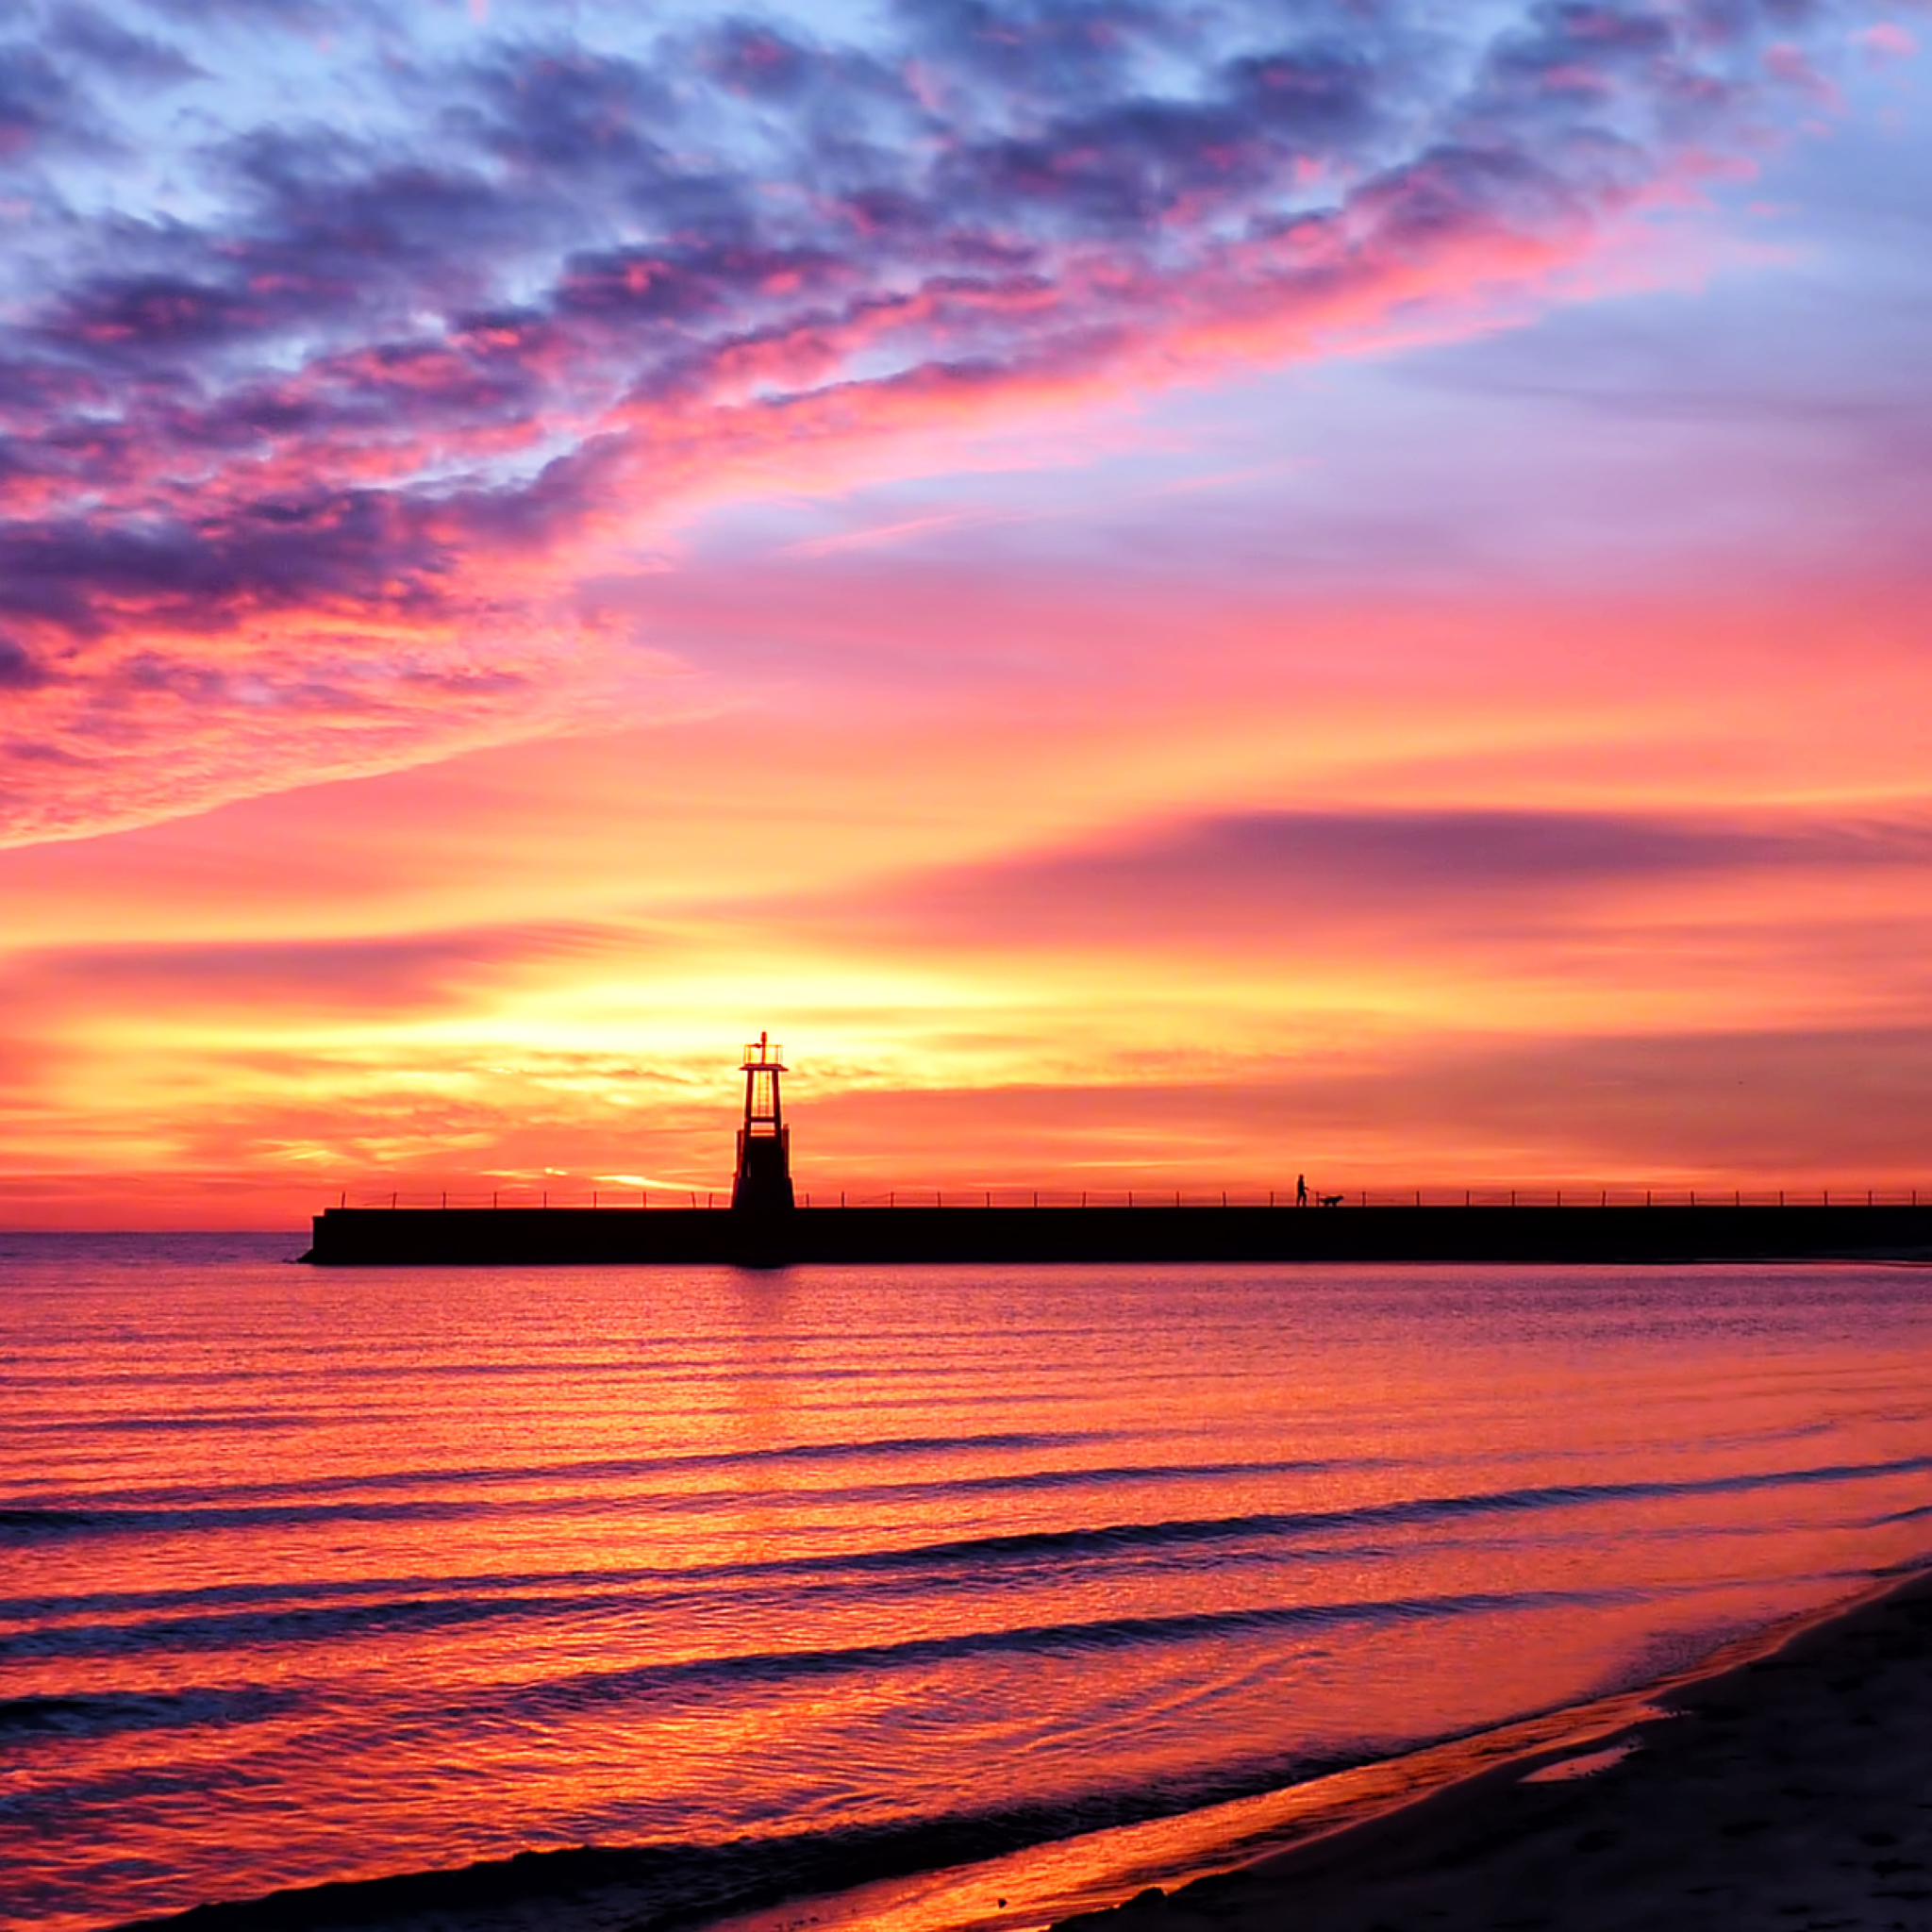 Обои Lighthouse And Red Sunset Beach 2048x2048